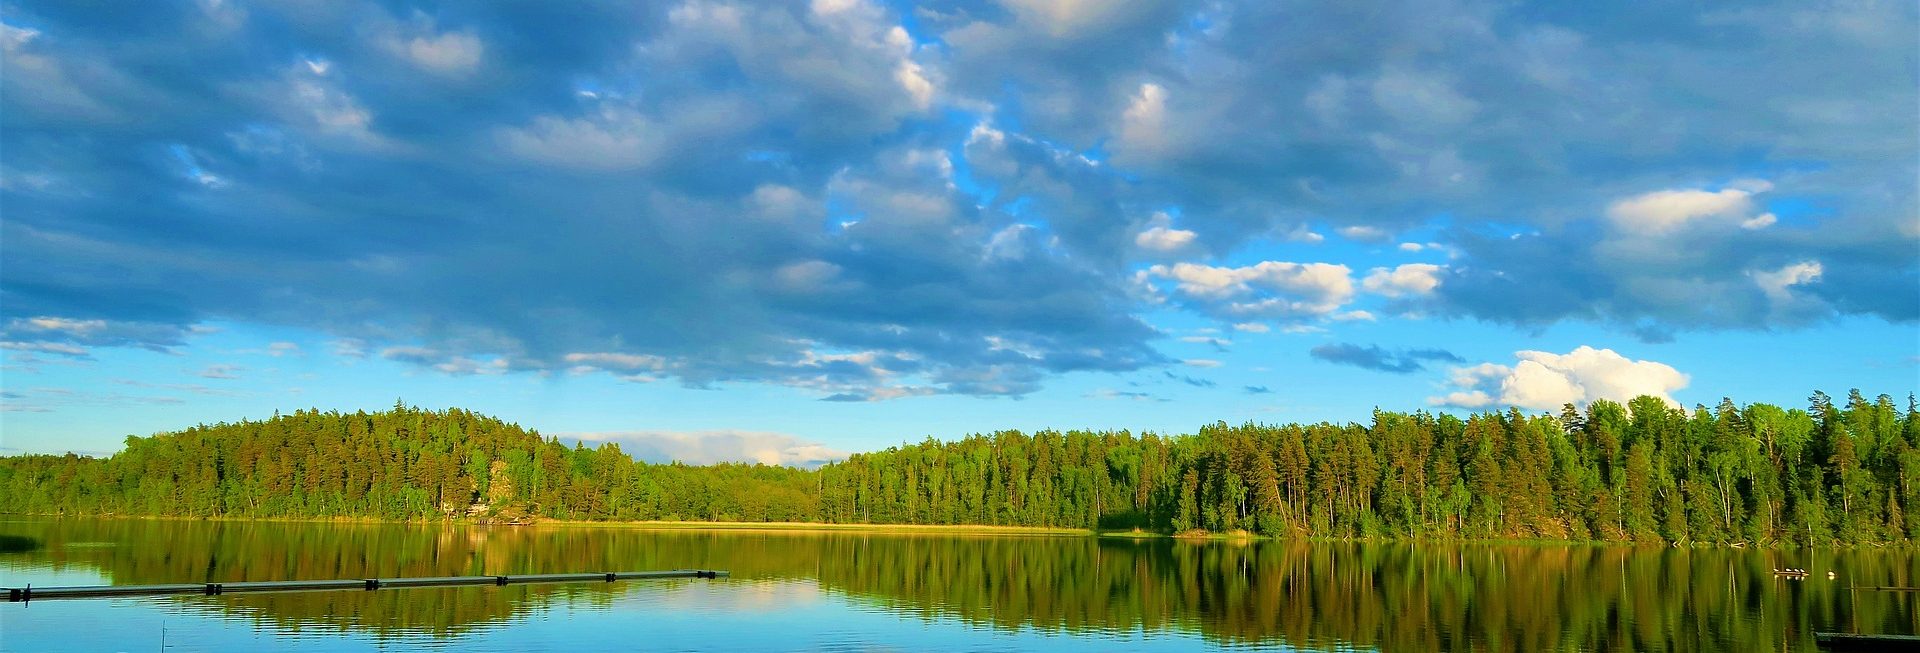 Zdjęcie przedstawia błękitne jezioro w którym odbija się zielony las.